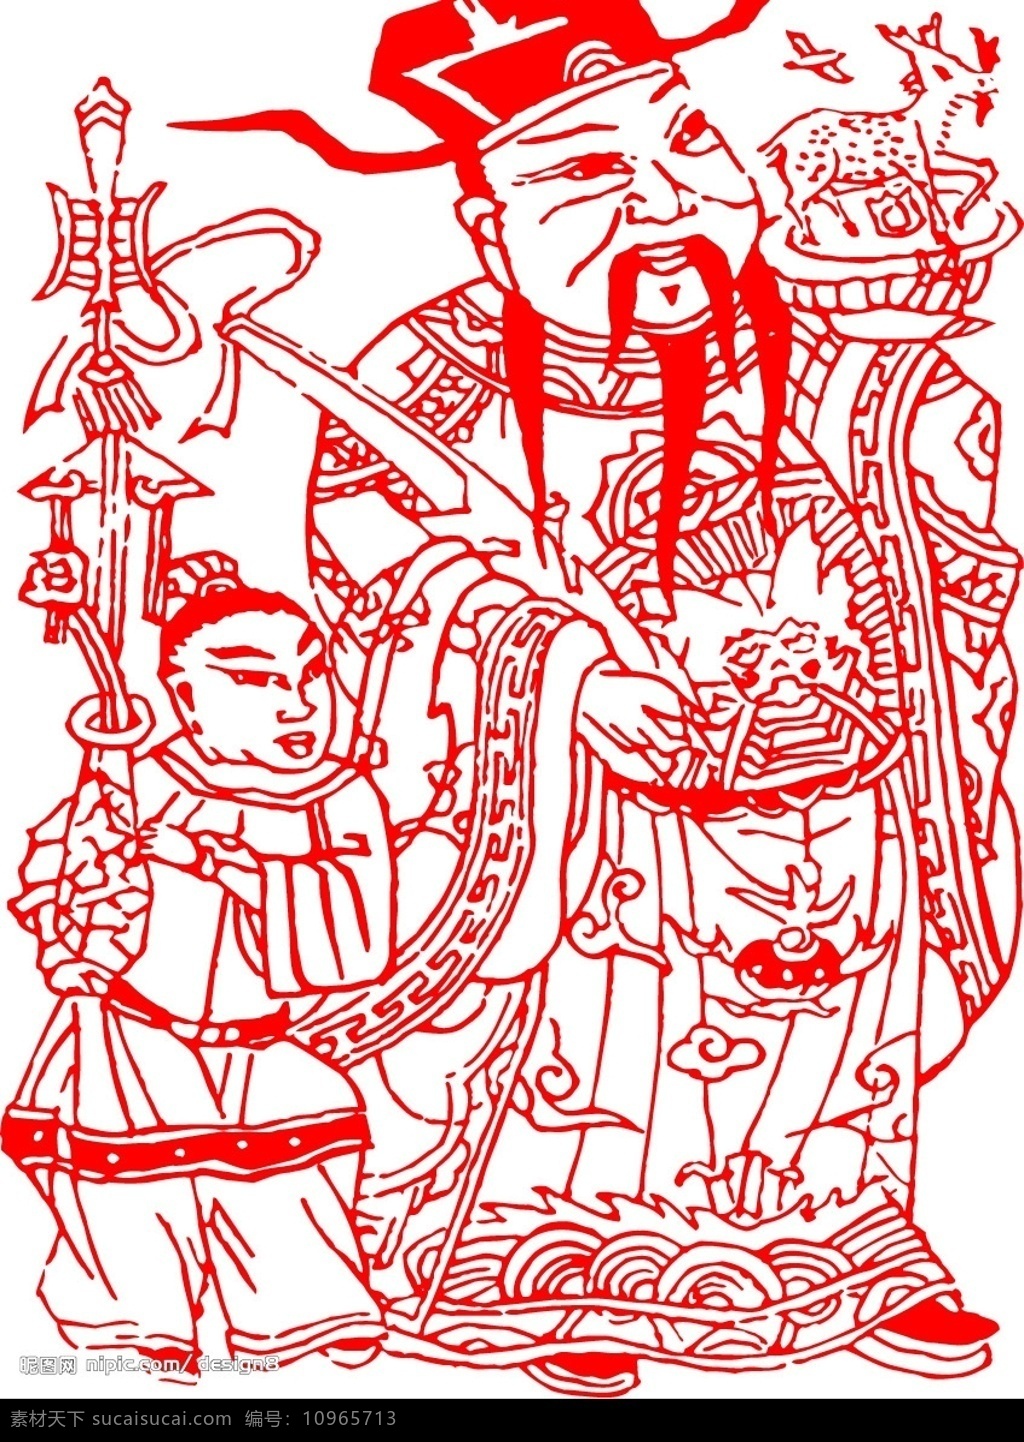 中国剪纸8 矢量人物 矢量素材 传统文化 民间艺术 文化艺术 矢量图库